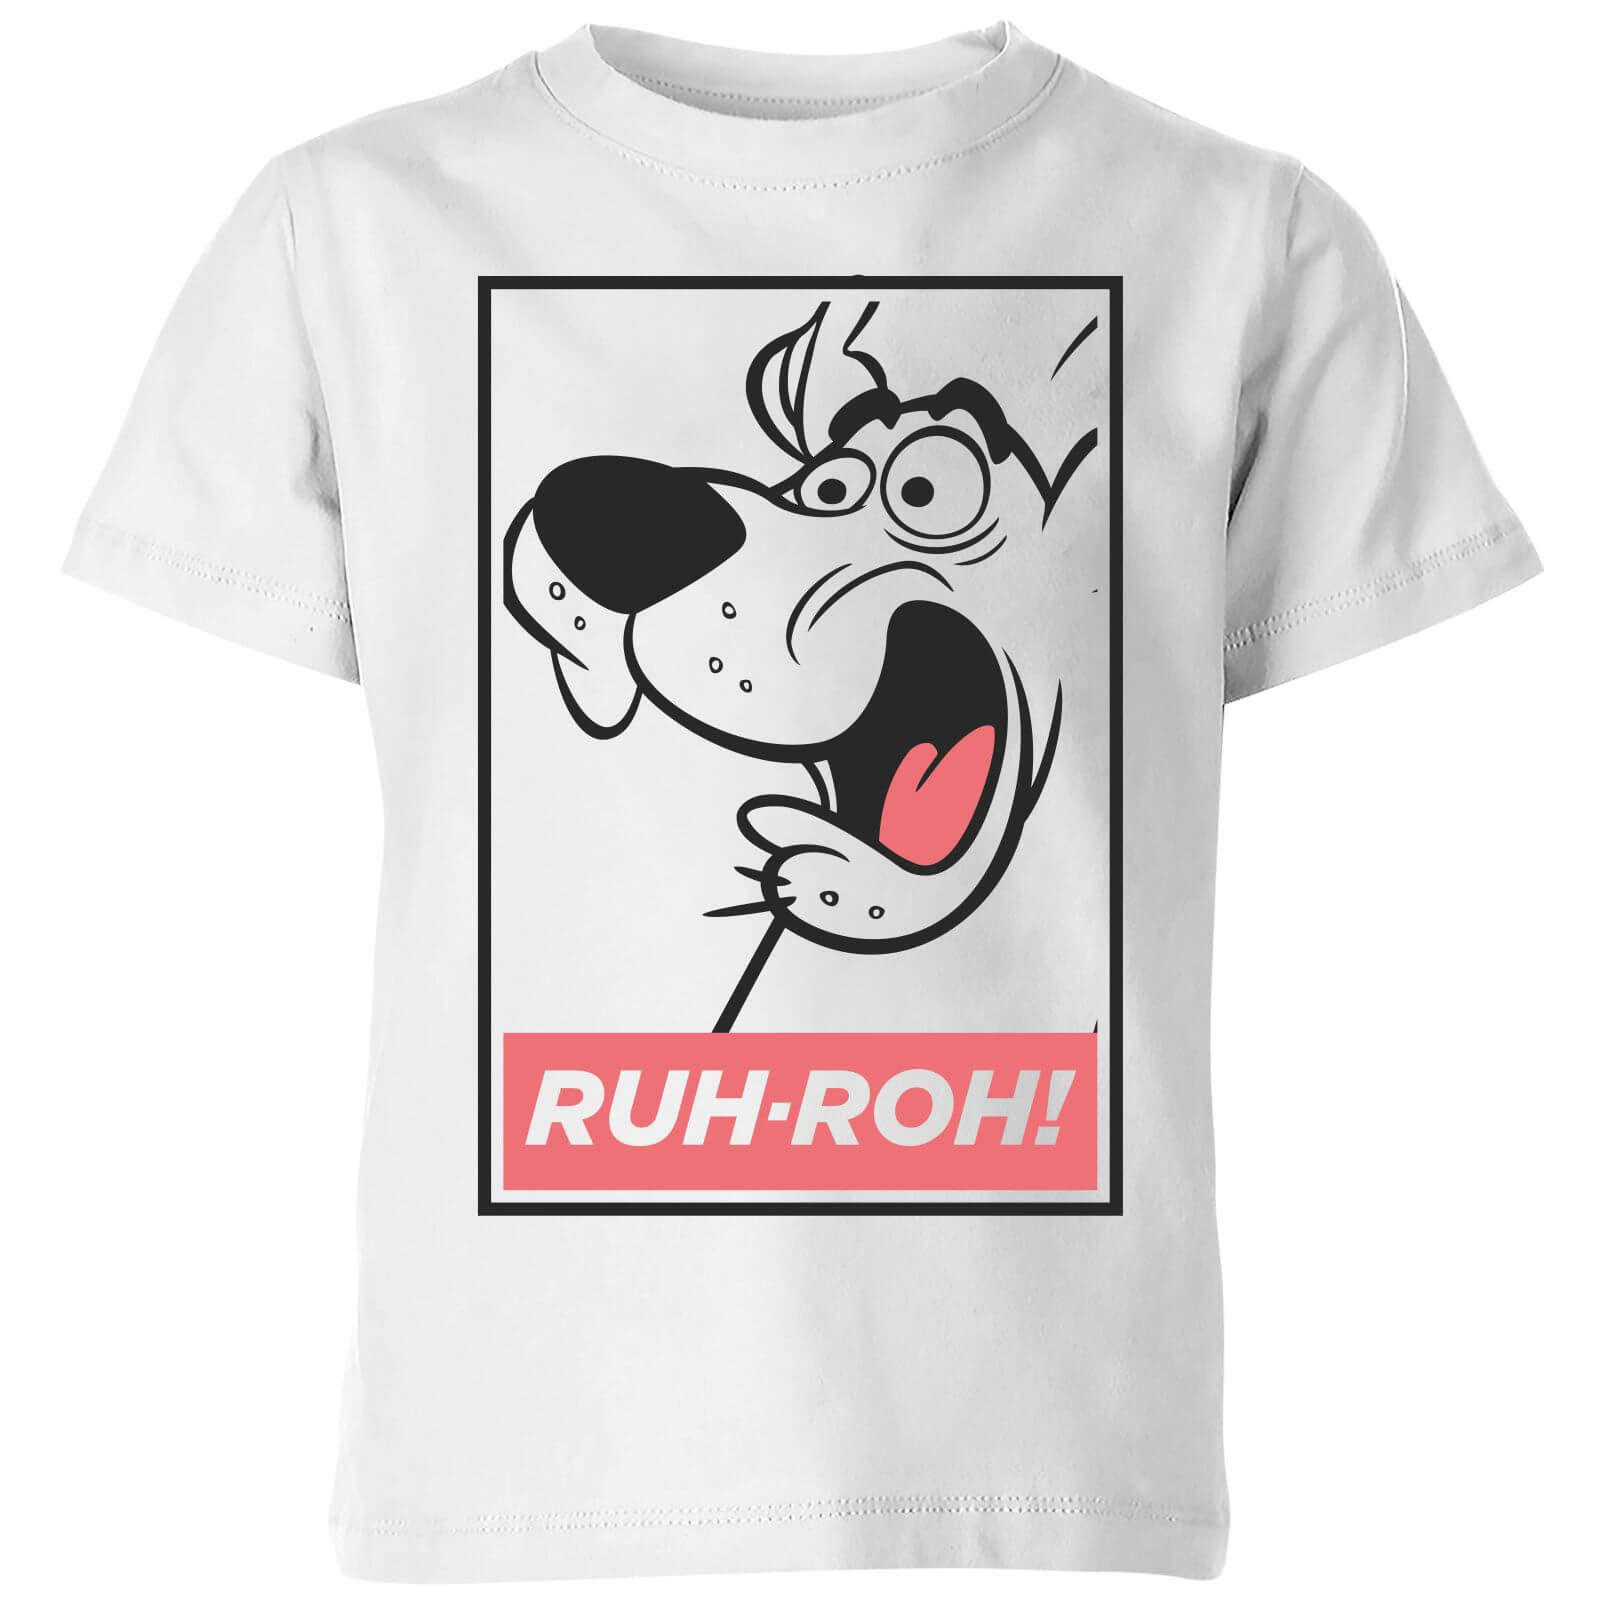 Scooby Doo Ruh-Roh! Kids' T-Shirt - White - 11-12 Years